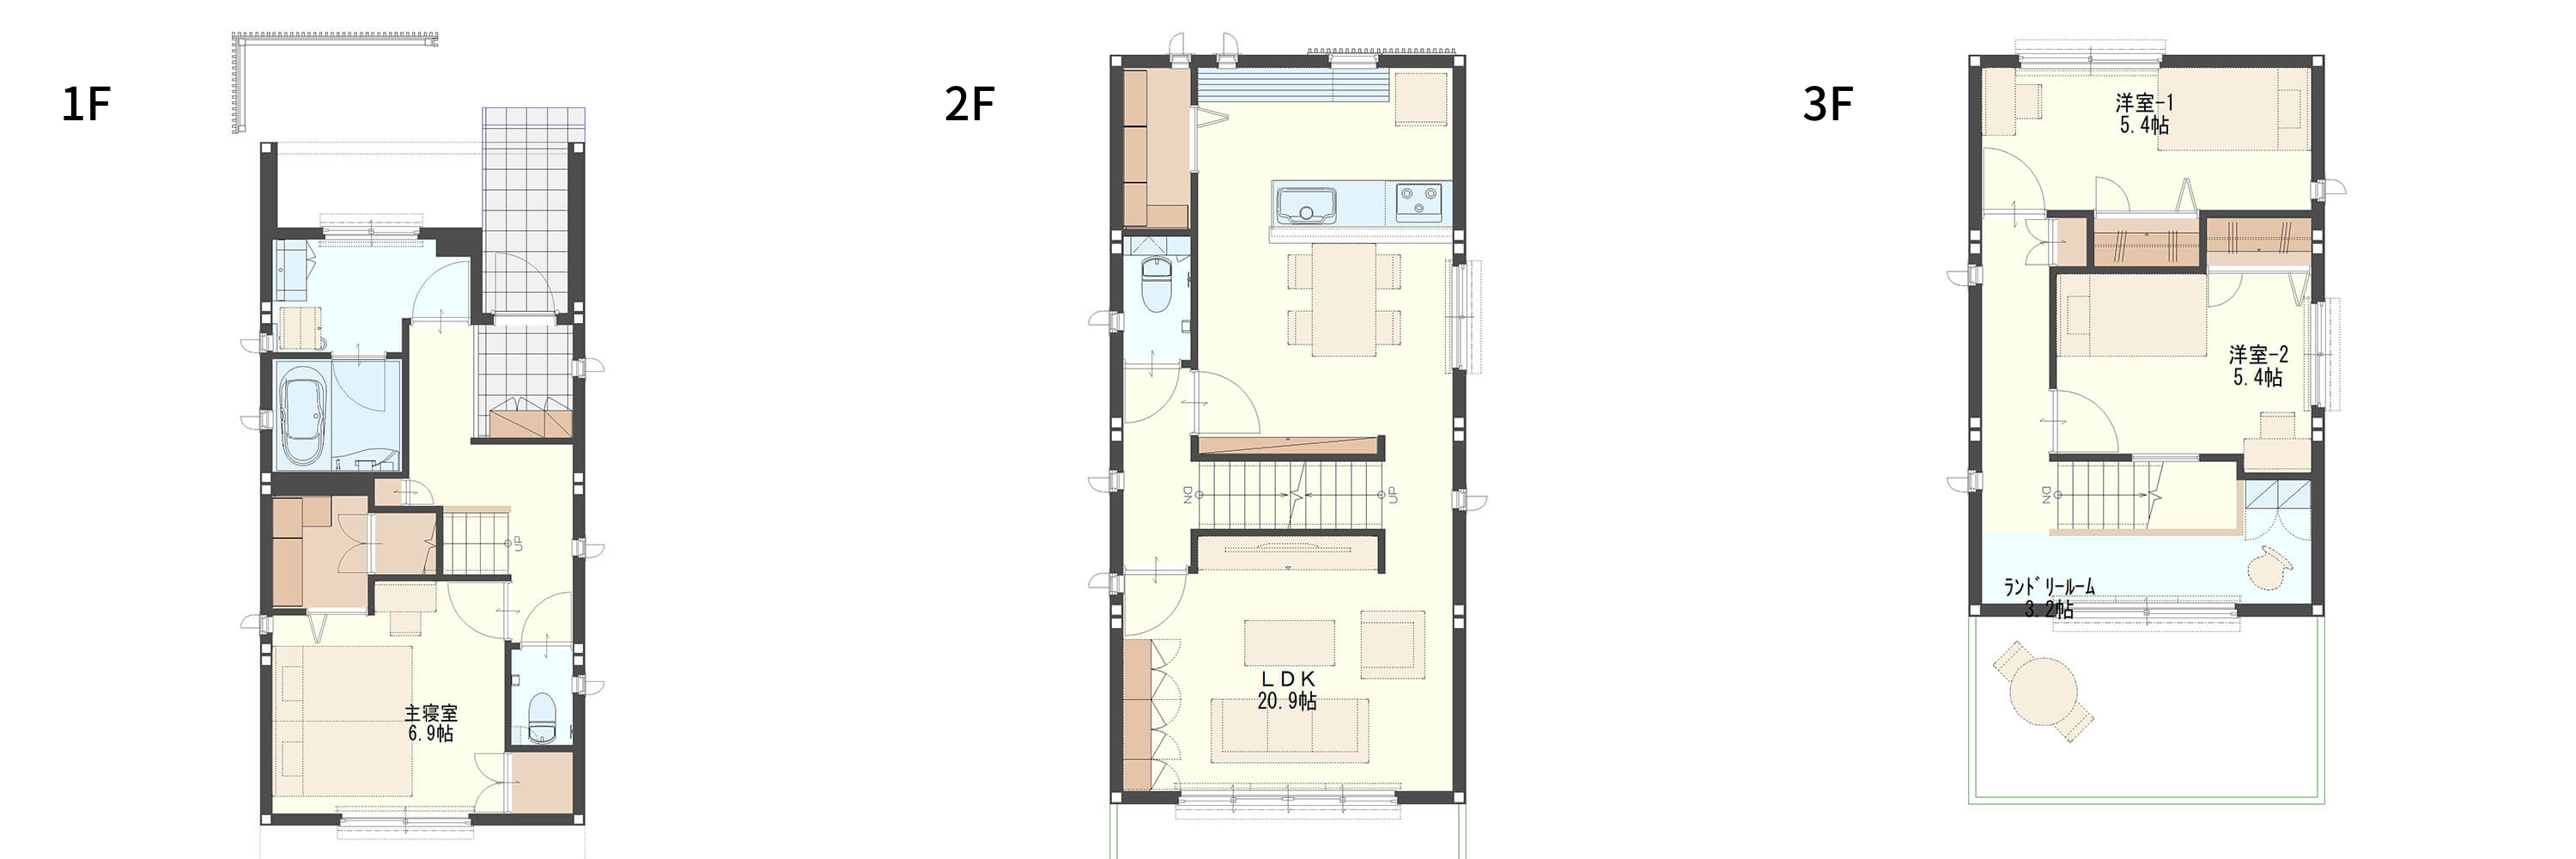 家族4人でゆったり暮らせる狭小住宅の3階建ての間取り図